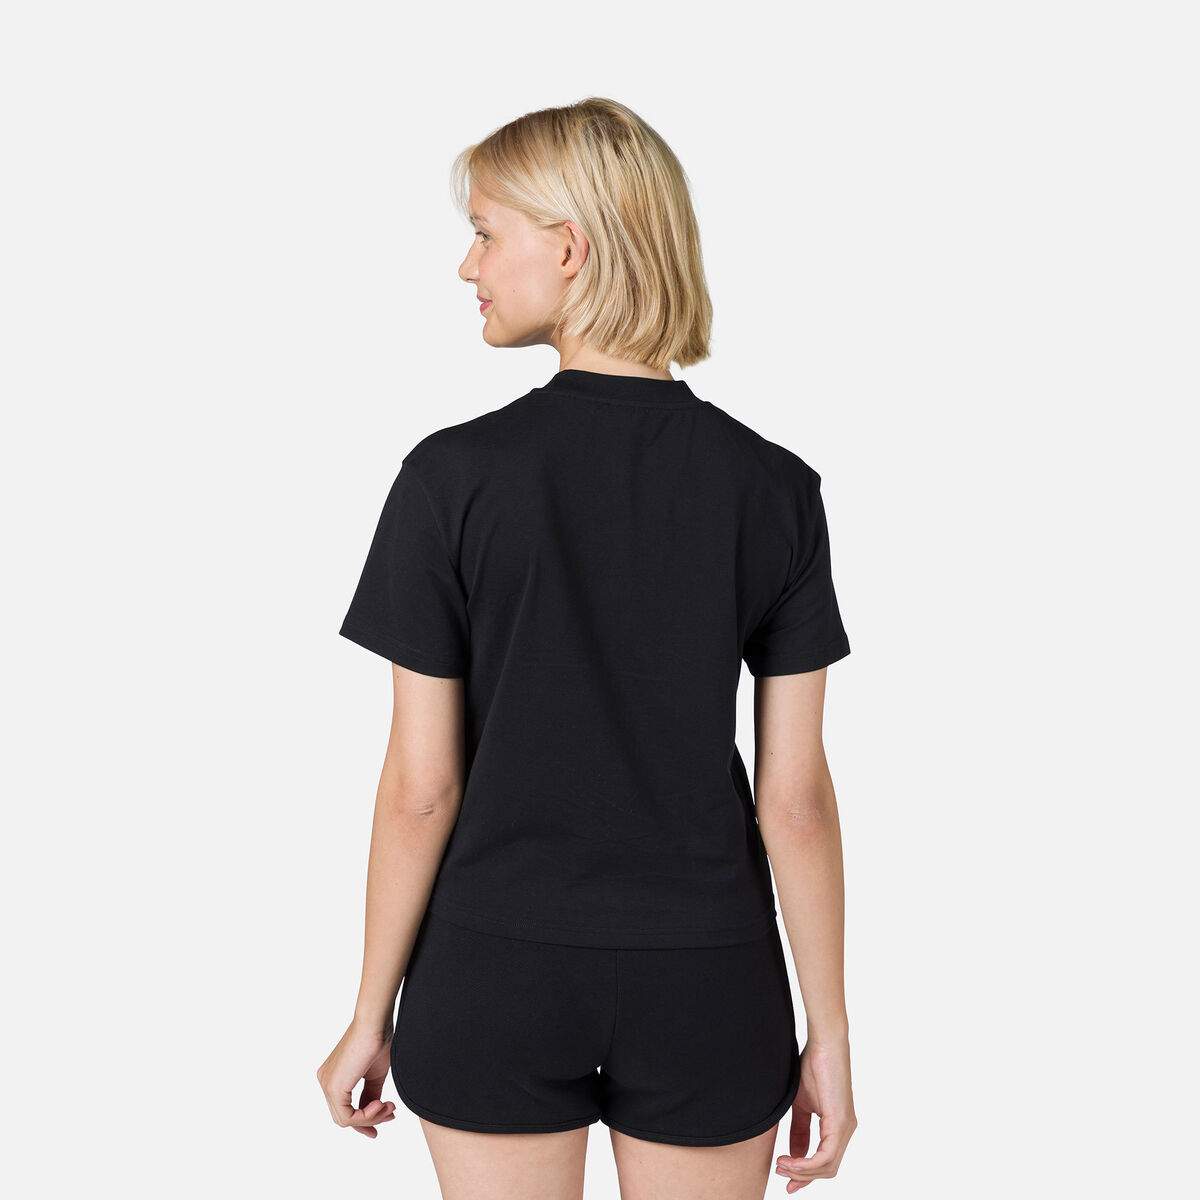 Rossignol Damen-T-Shirt mit Print Black